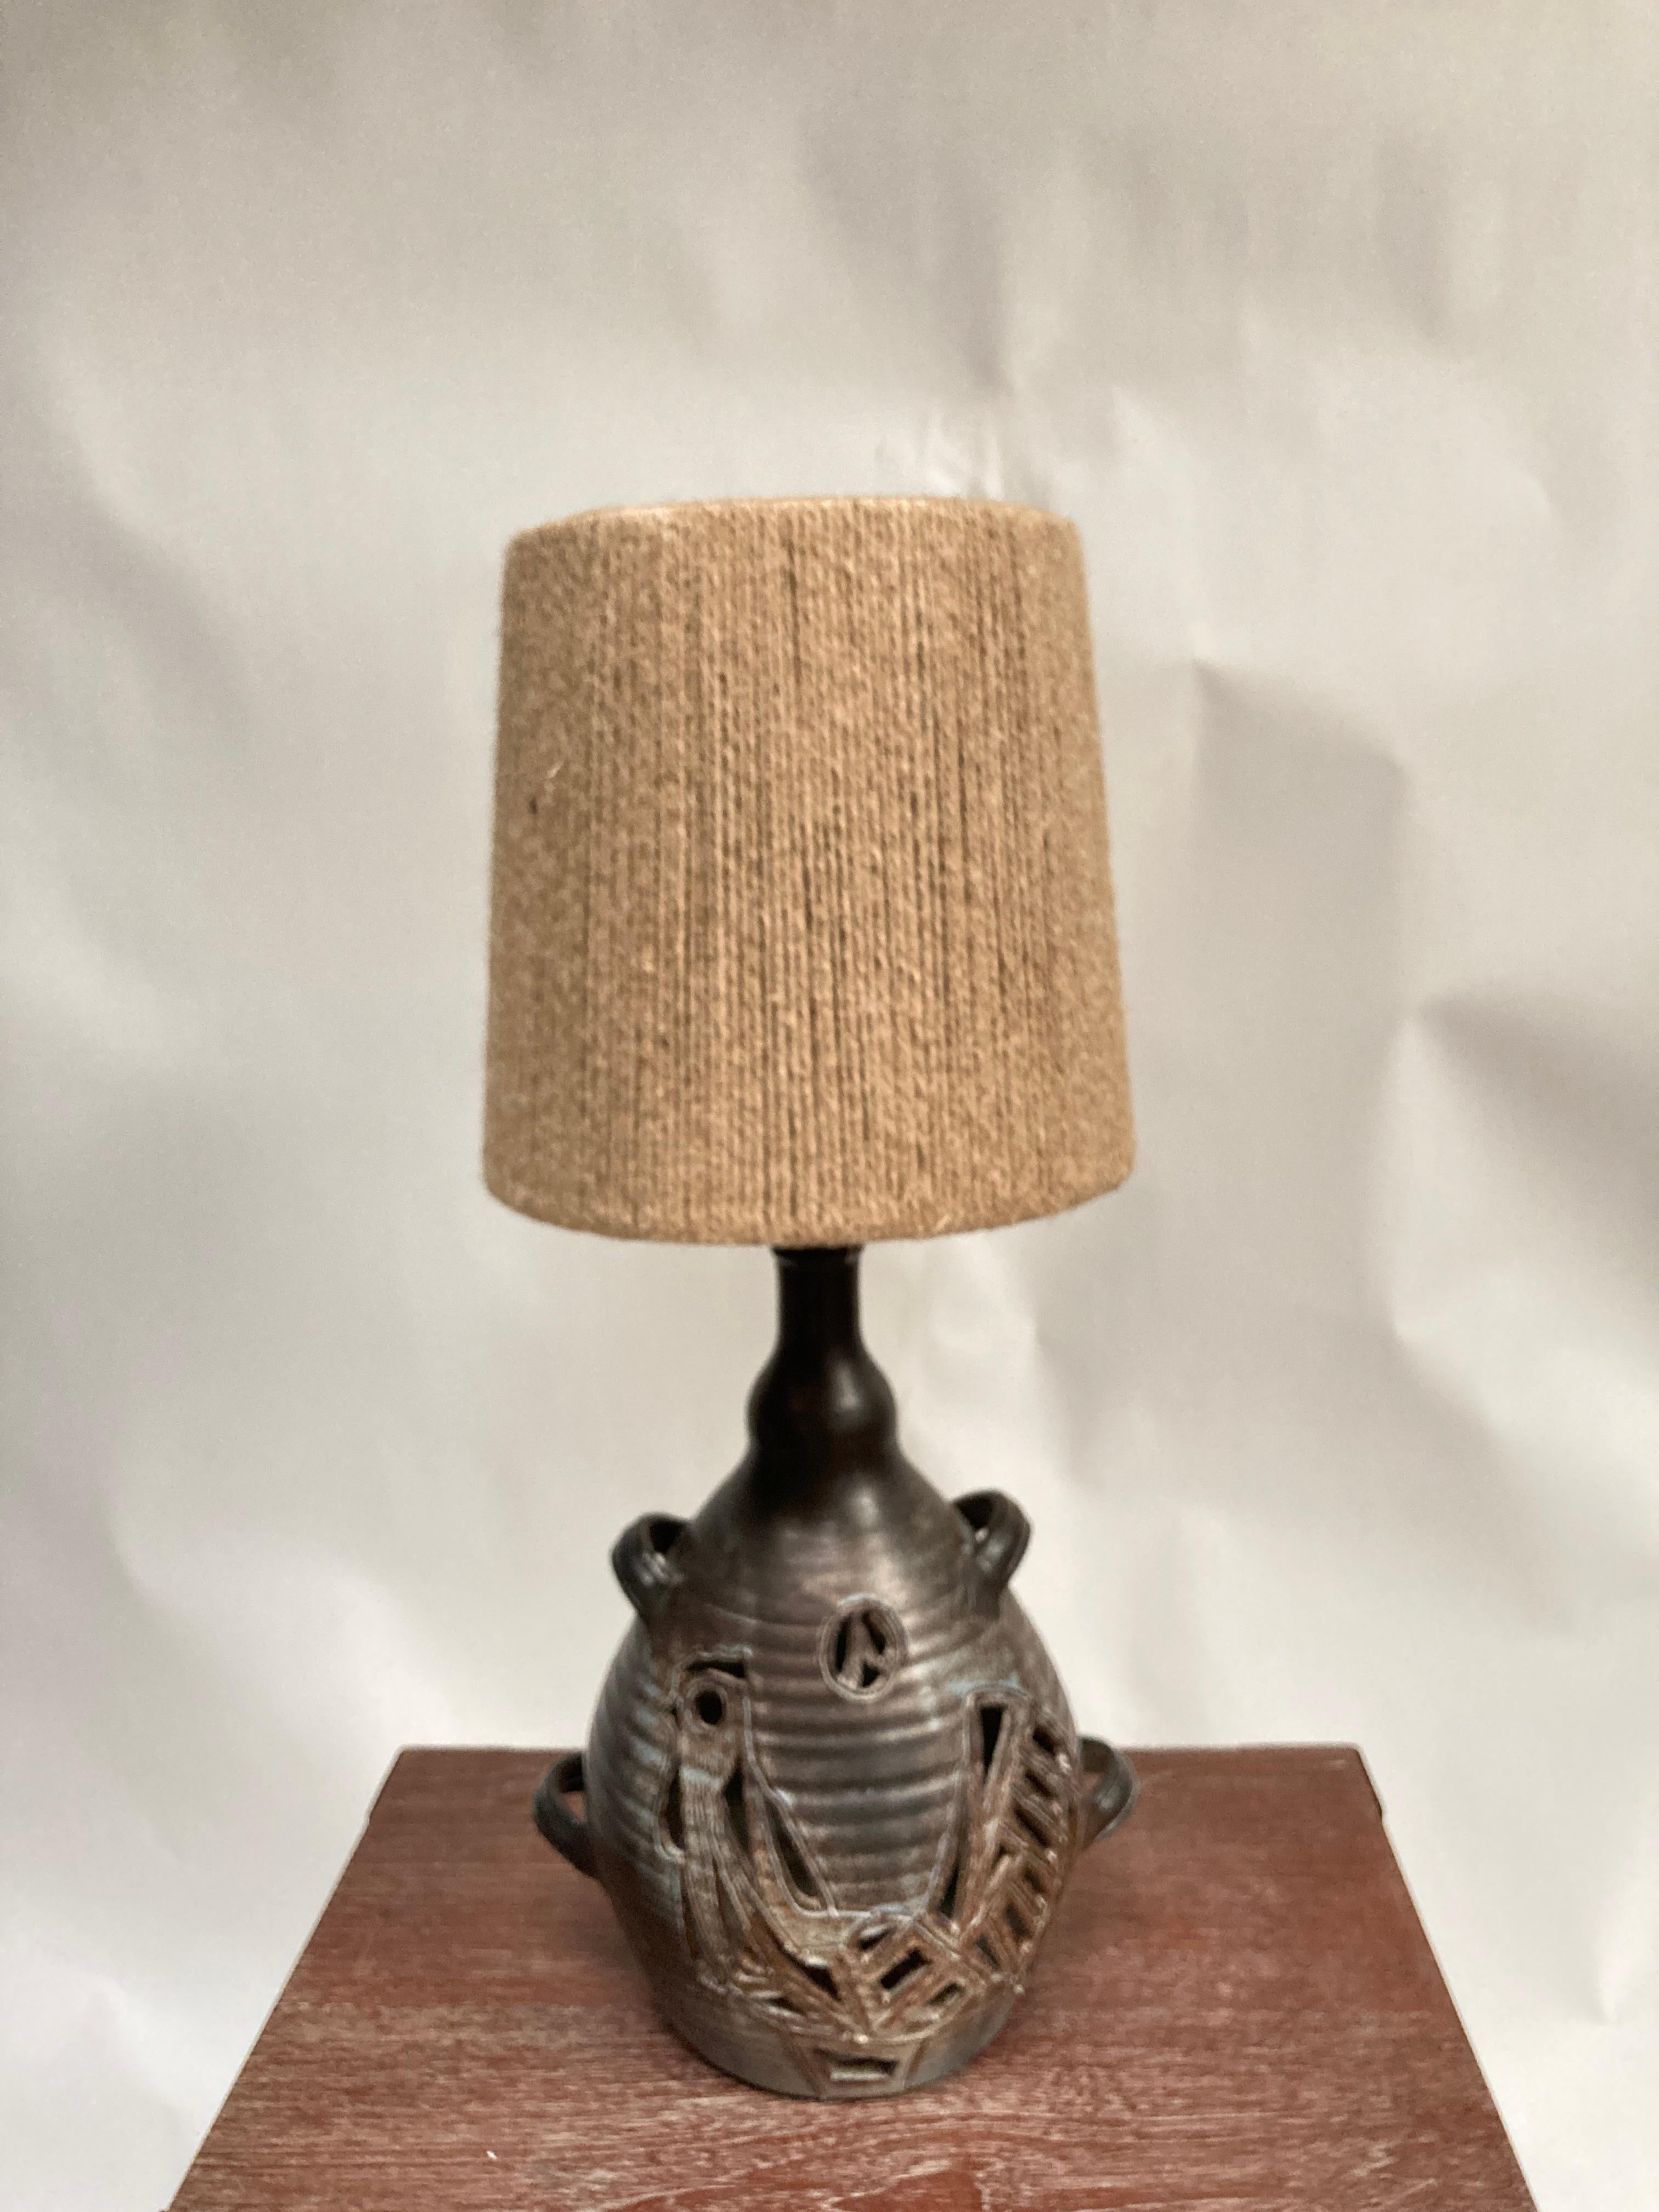 Einzigartige Keramiklampe signiert Le vieux Chêne Dieulefit
 Südfrankreich
Maße ohne Schirm angegeben
Kein Schatten enthalten
Ein Licht innen, ein Licht außen